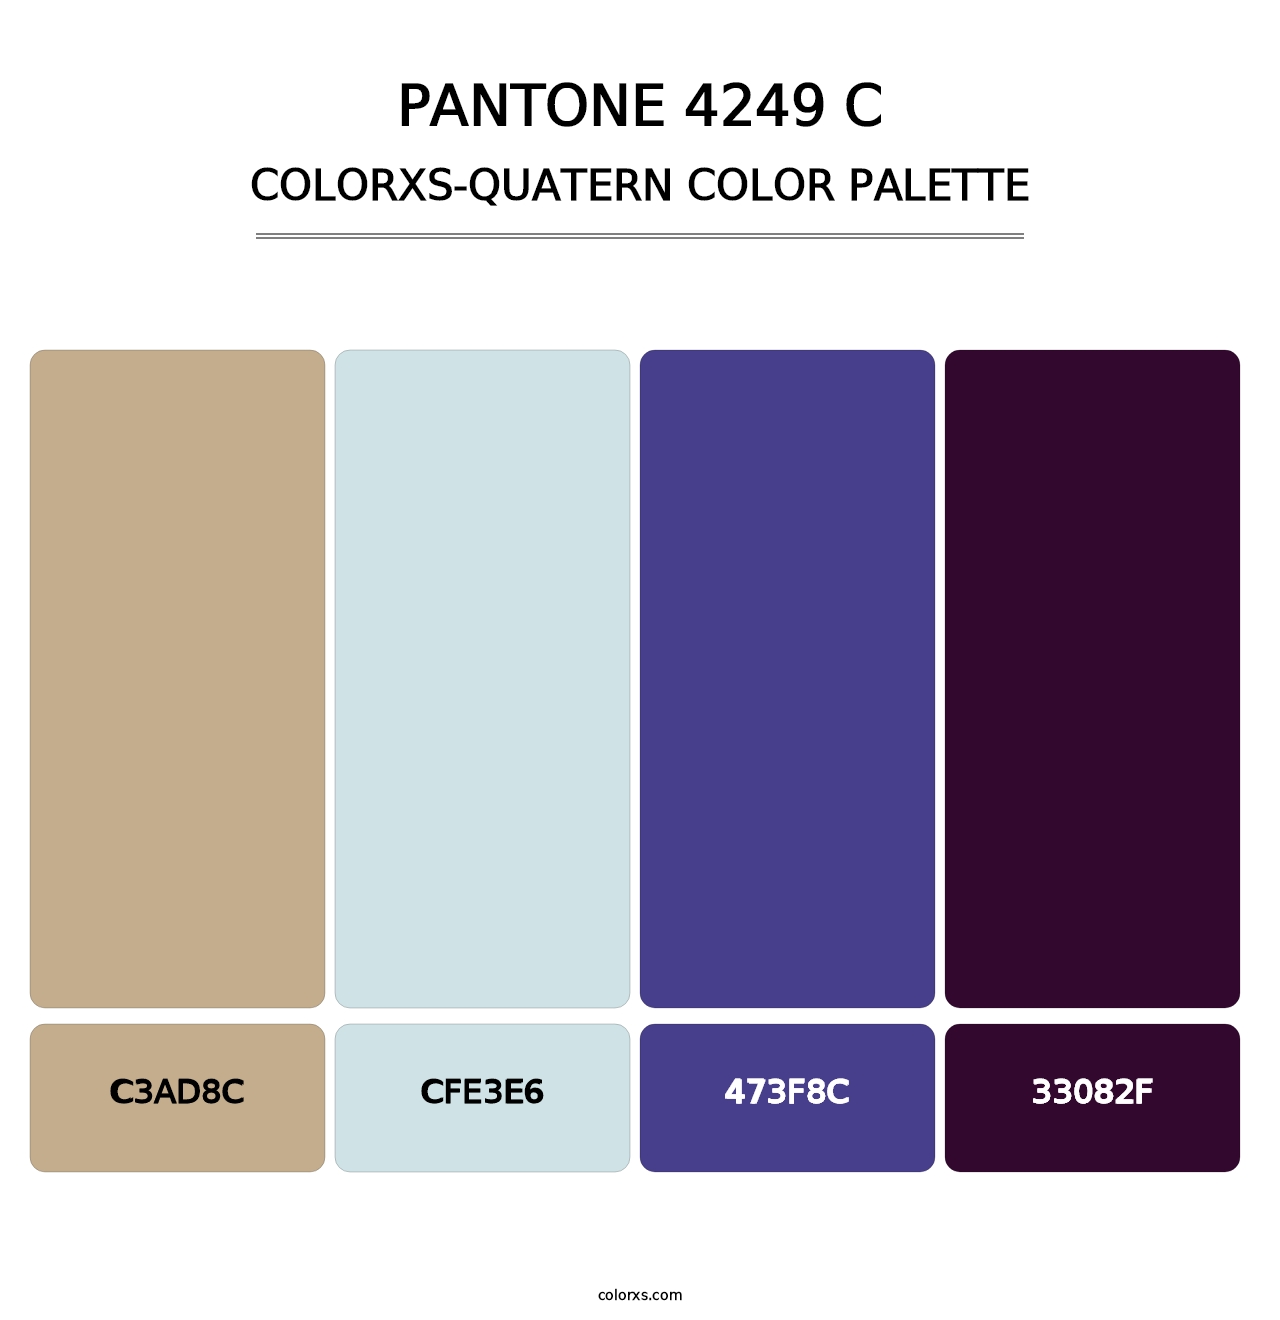 PANTONE 4249 C - Colorxs Quatern Palette